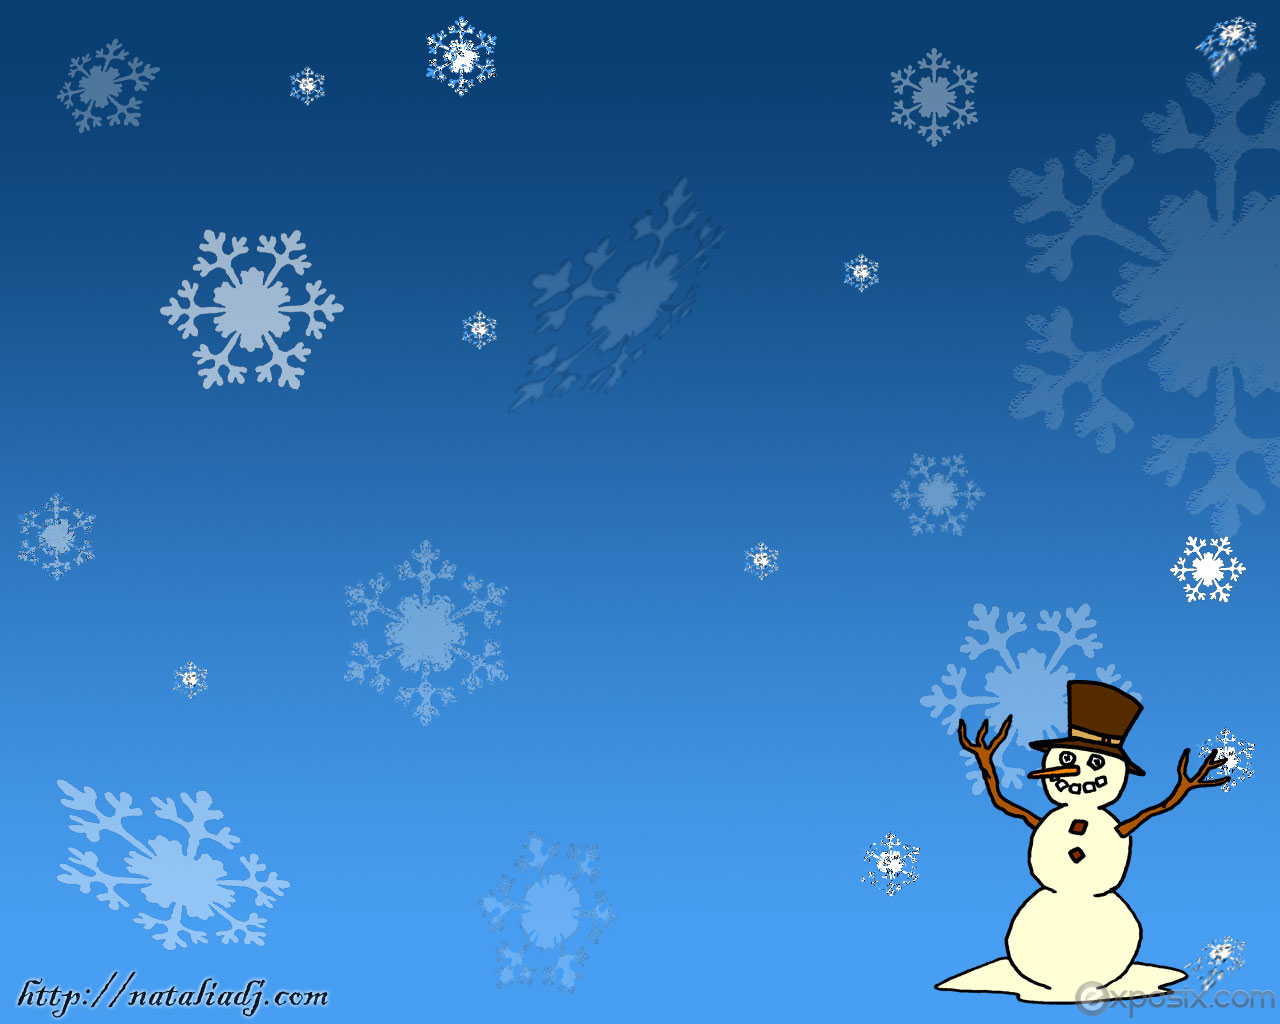 Christmas Wallpaper Snowman